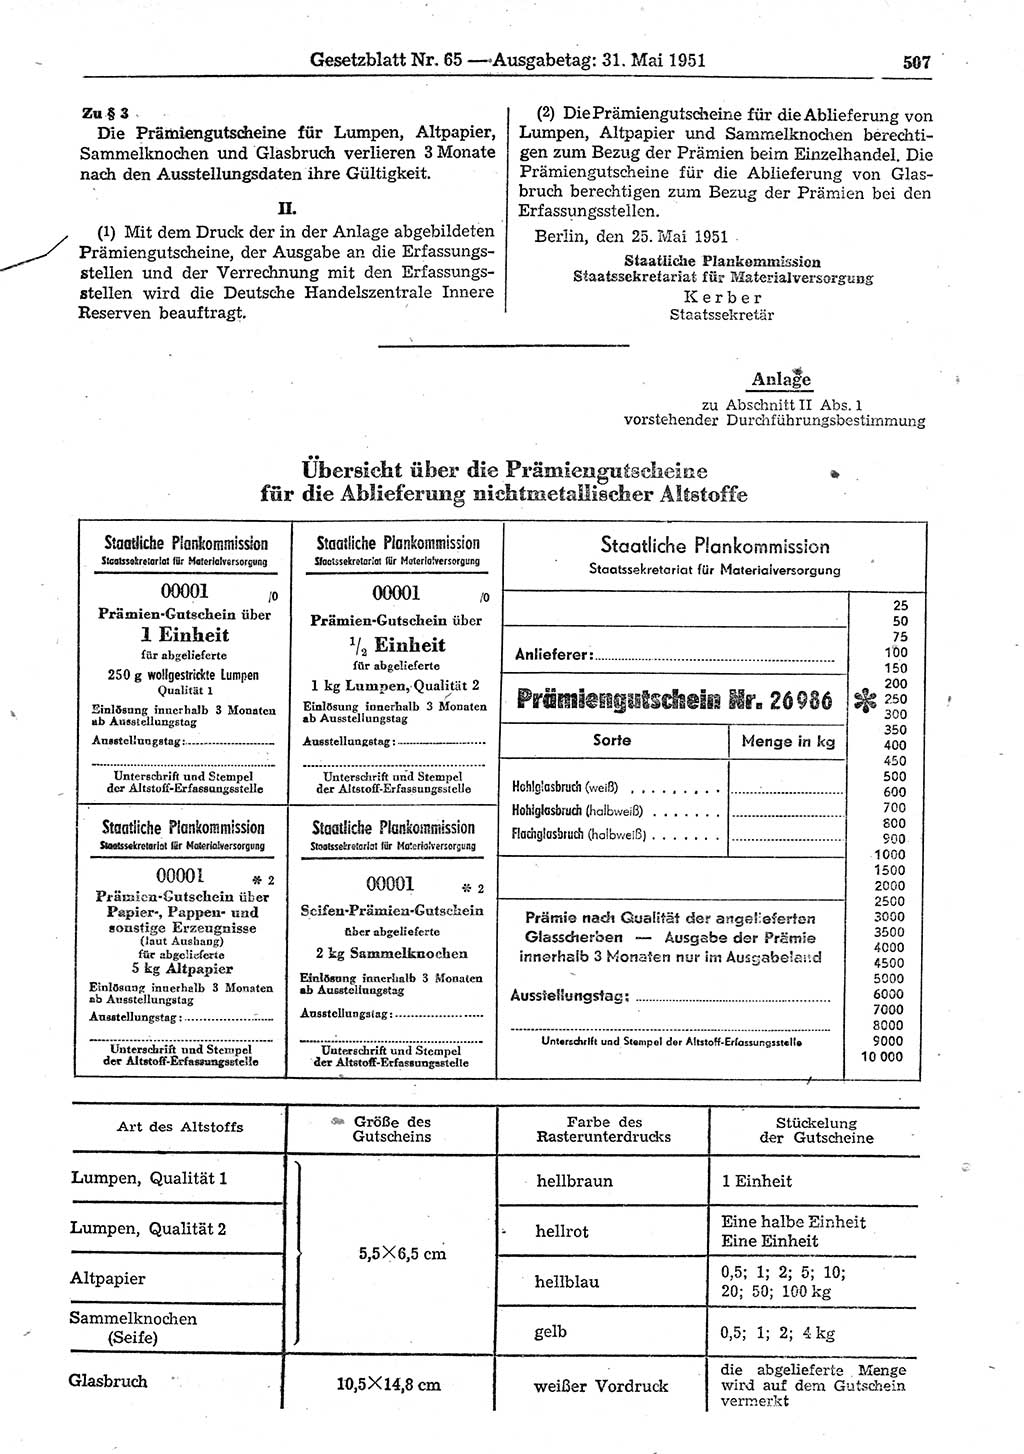 Gesetzblatt (GBl.) der Deutschen Demokratischen Republik (DDR) 1951, Seite 507 (GBl. DDR 1951, S. 507)